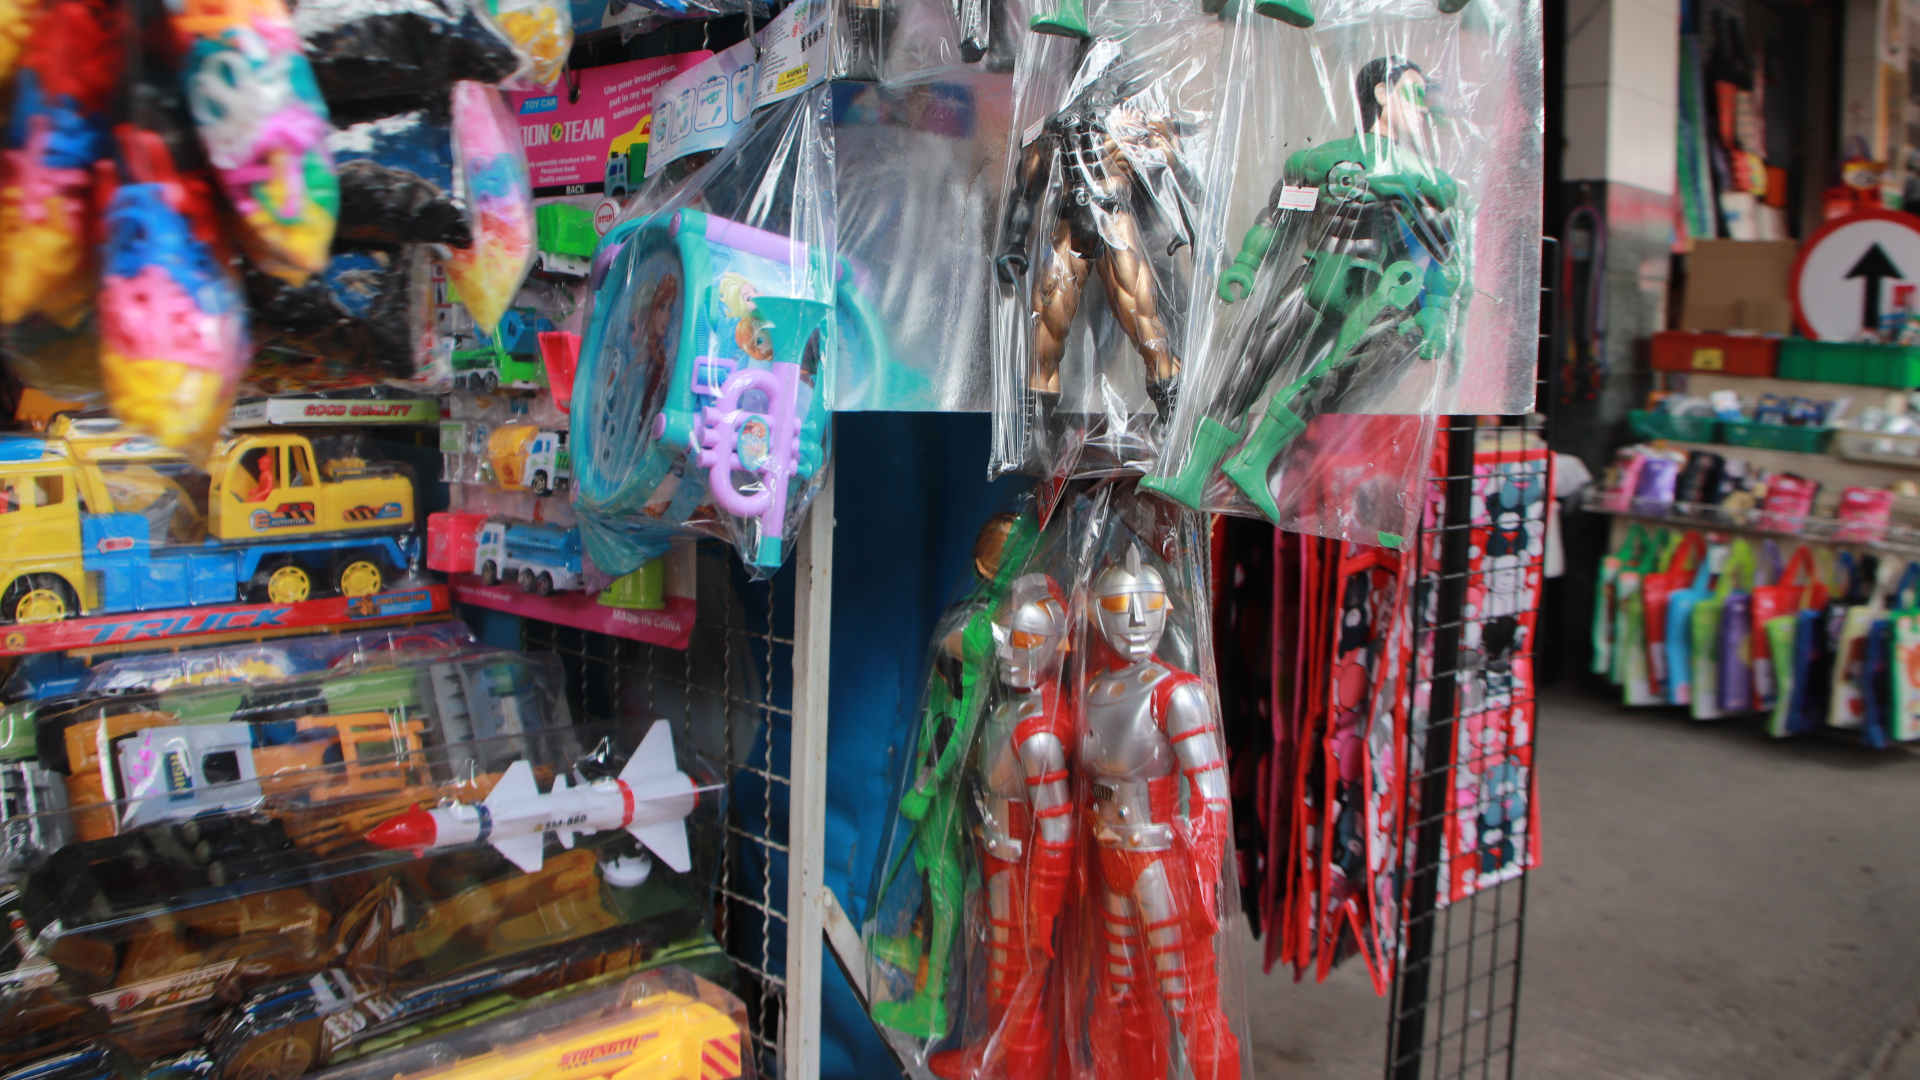 「ジャンボーグA」のパチモン人形がタイには未だにあるんですよ!